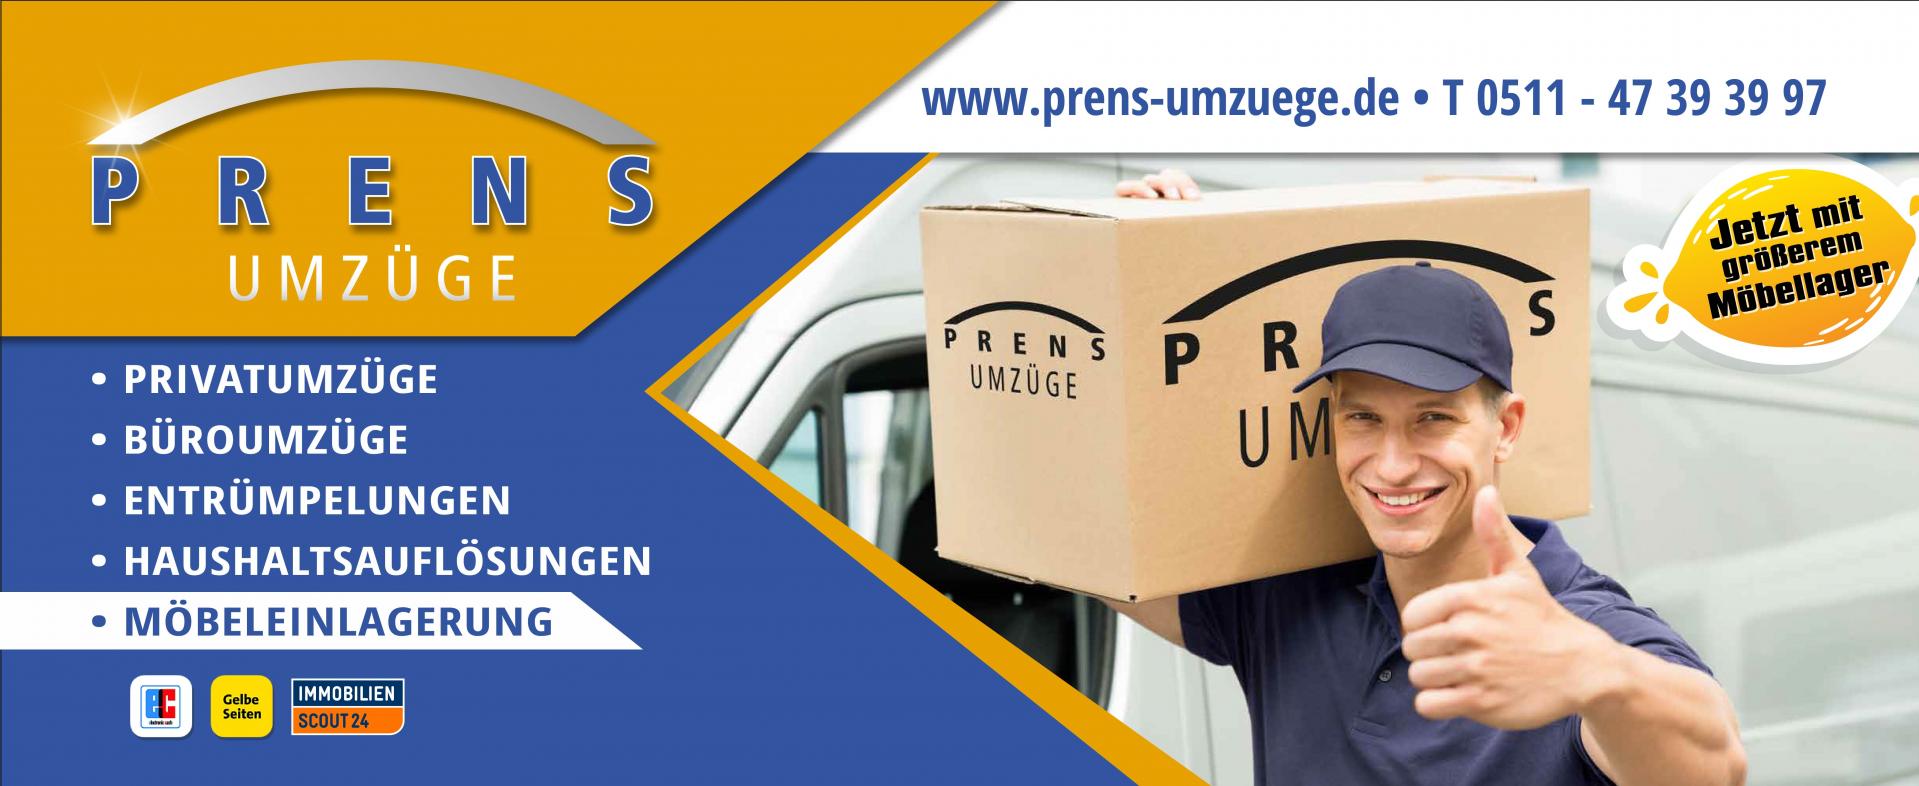 Prens Umzüge GmbH, Bartweg 20 in Hannover